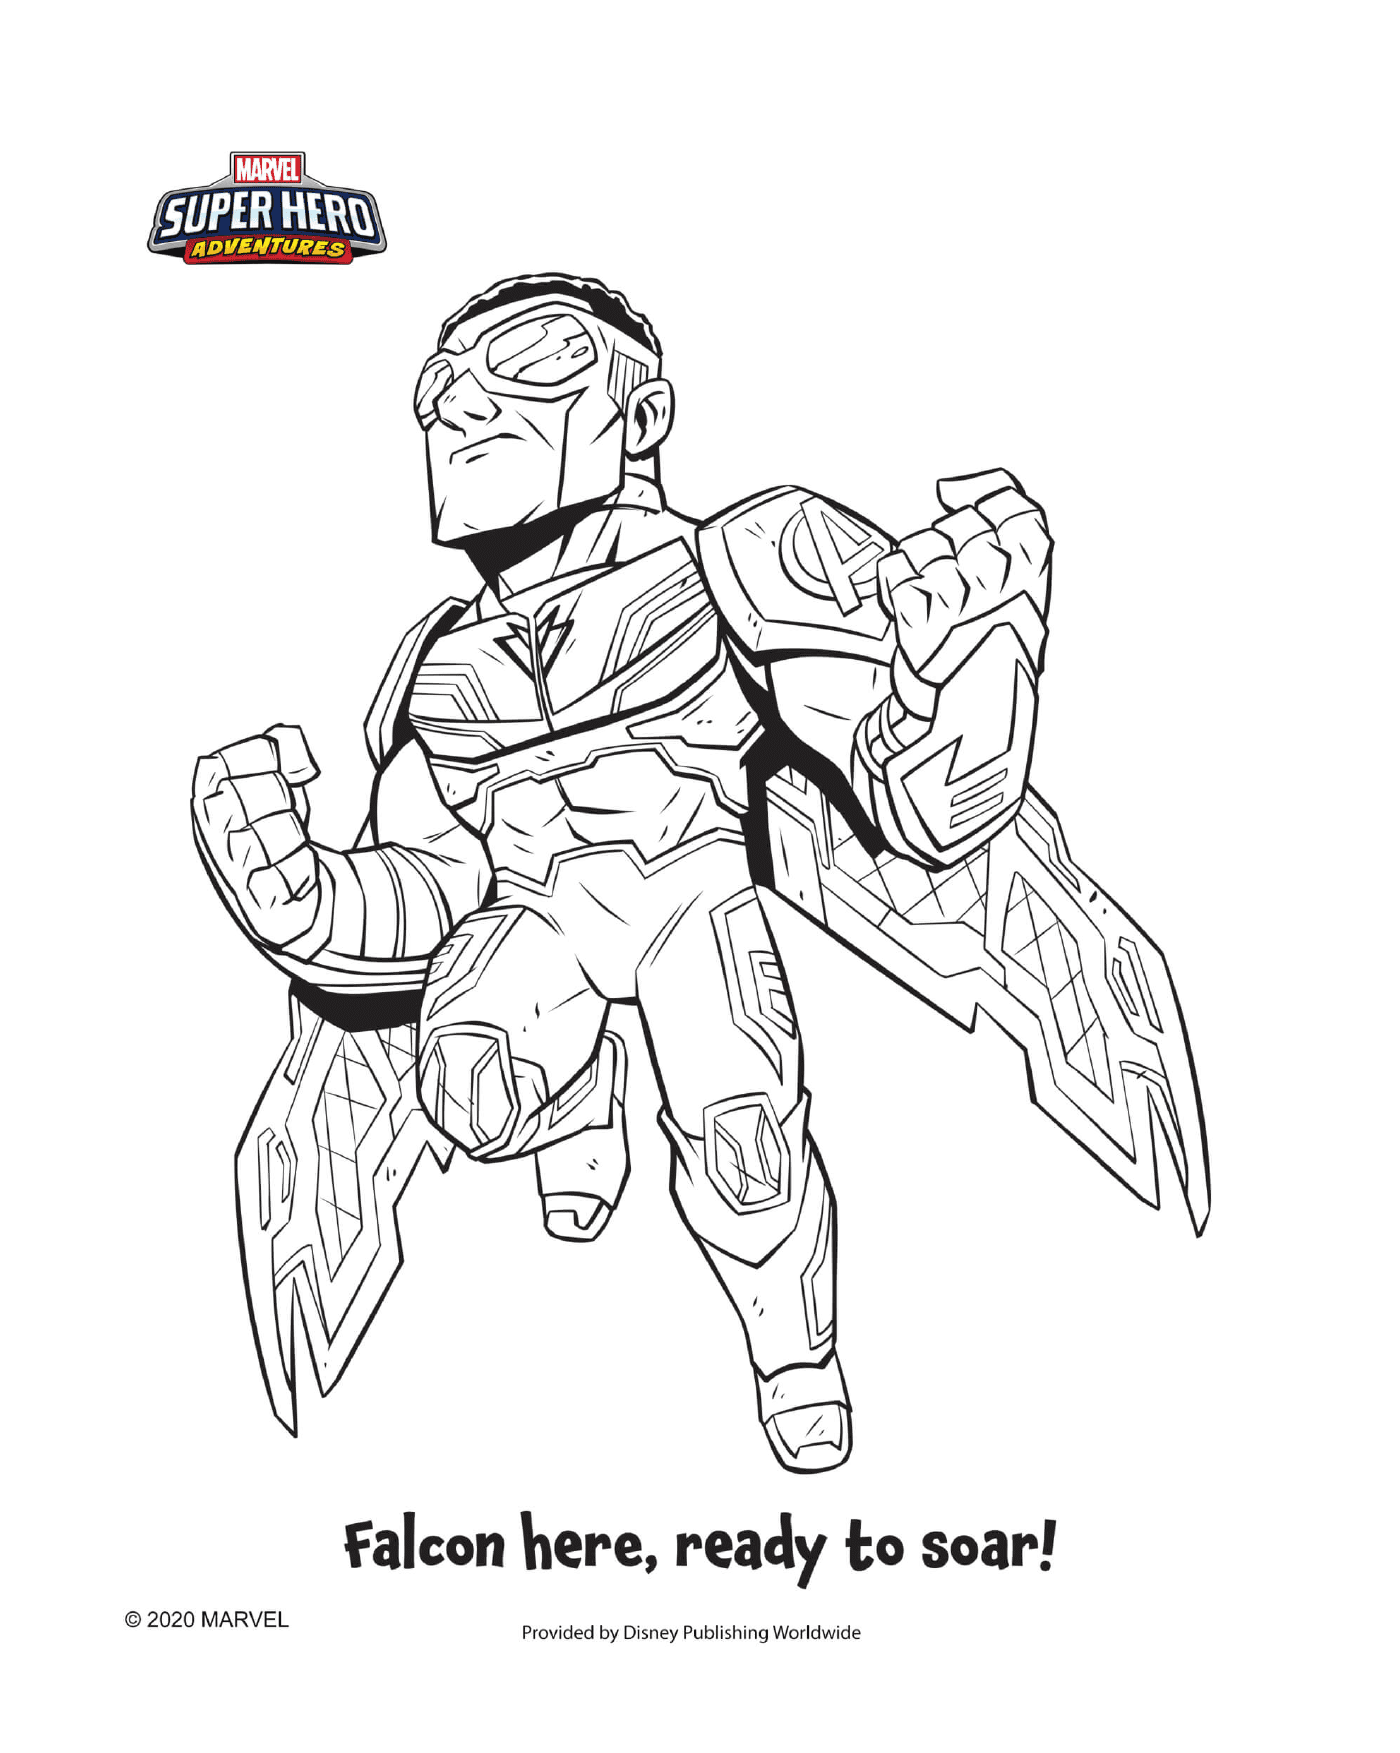  Falcon, super hero equipped 